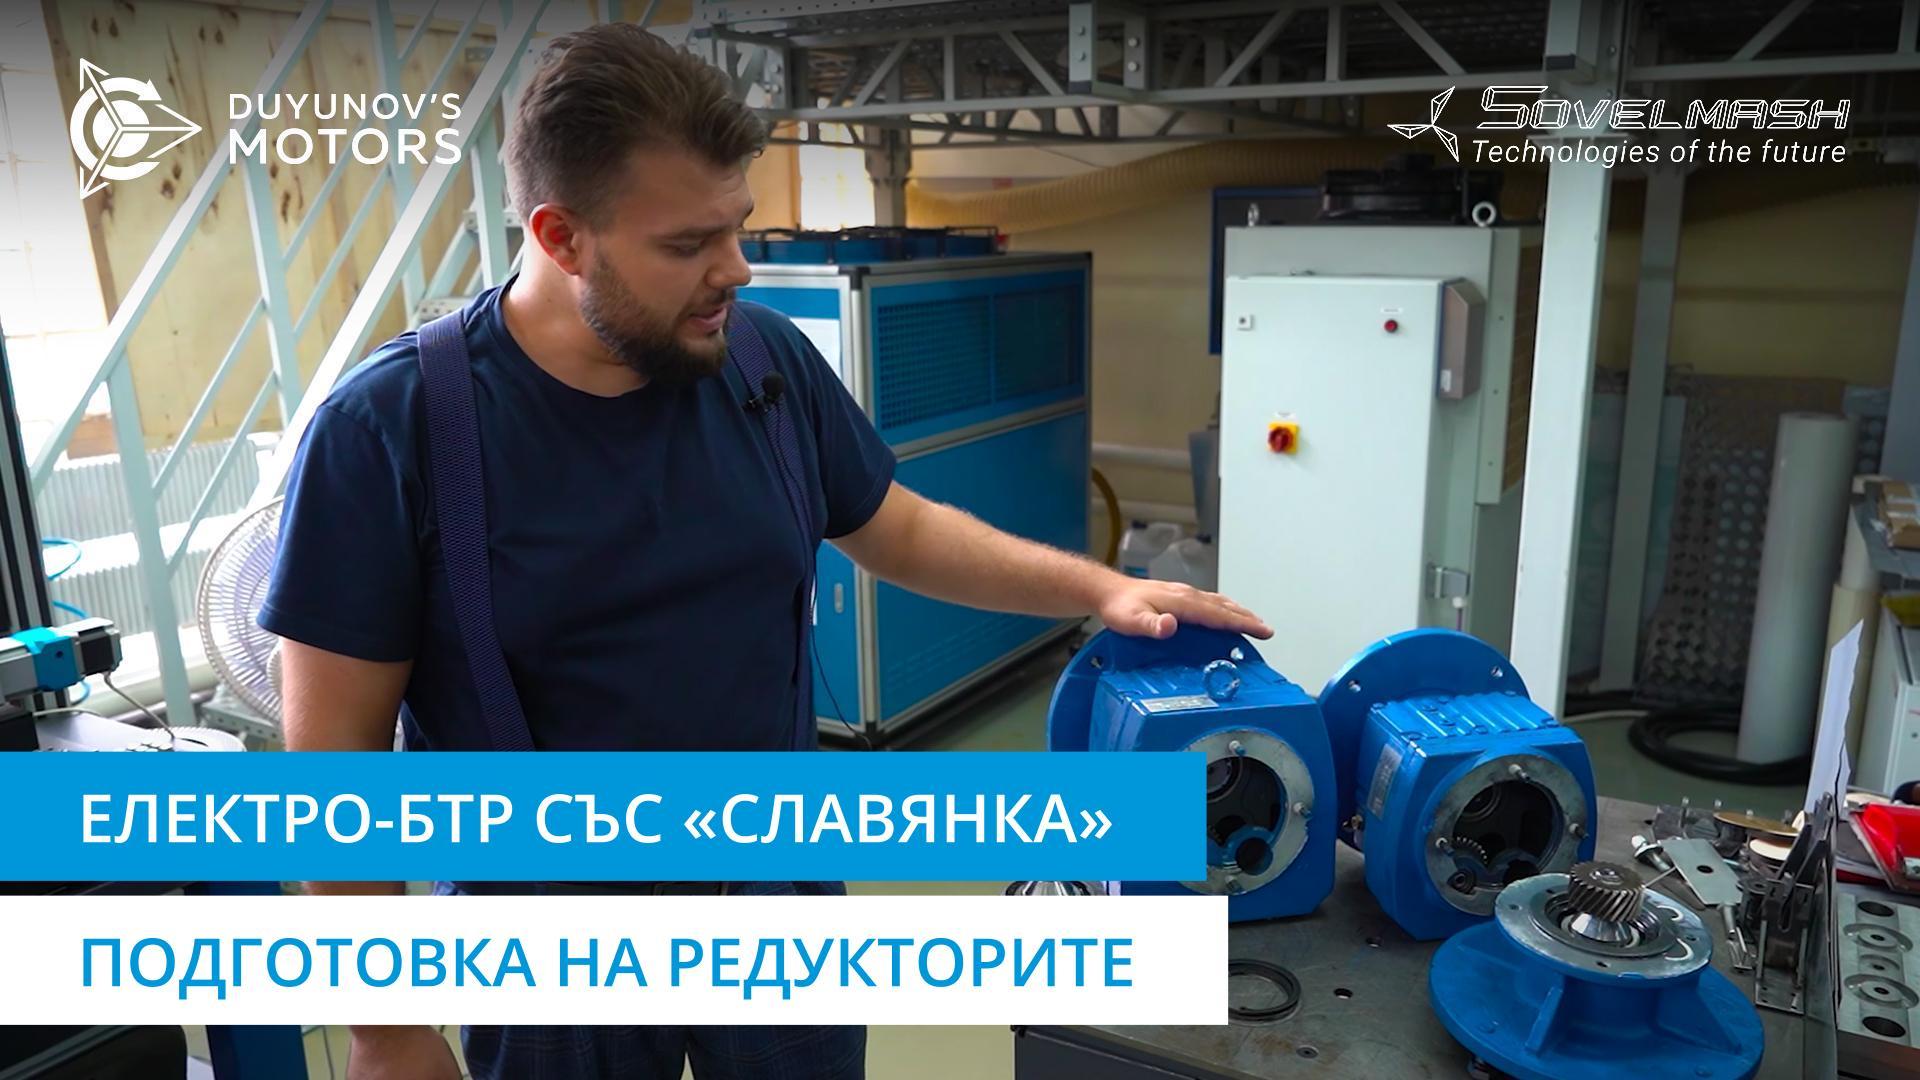 Електро-БТР със «Славянка»: работа по редукторите